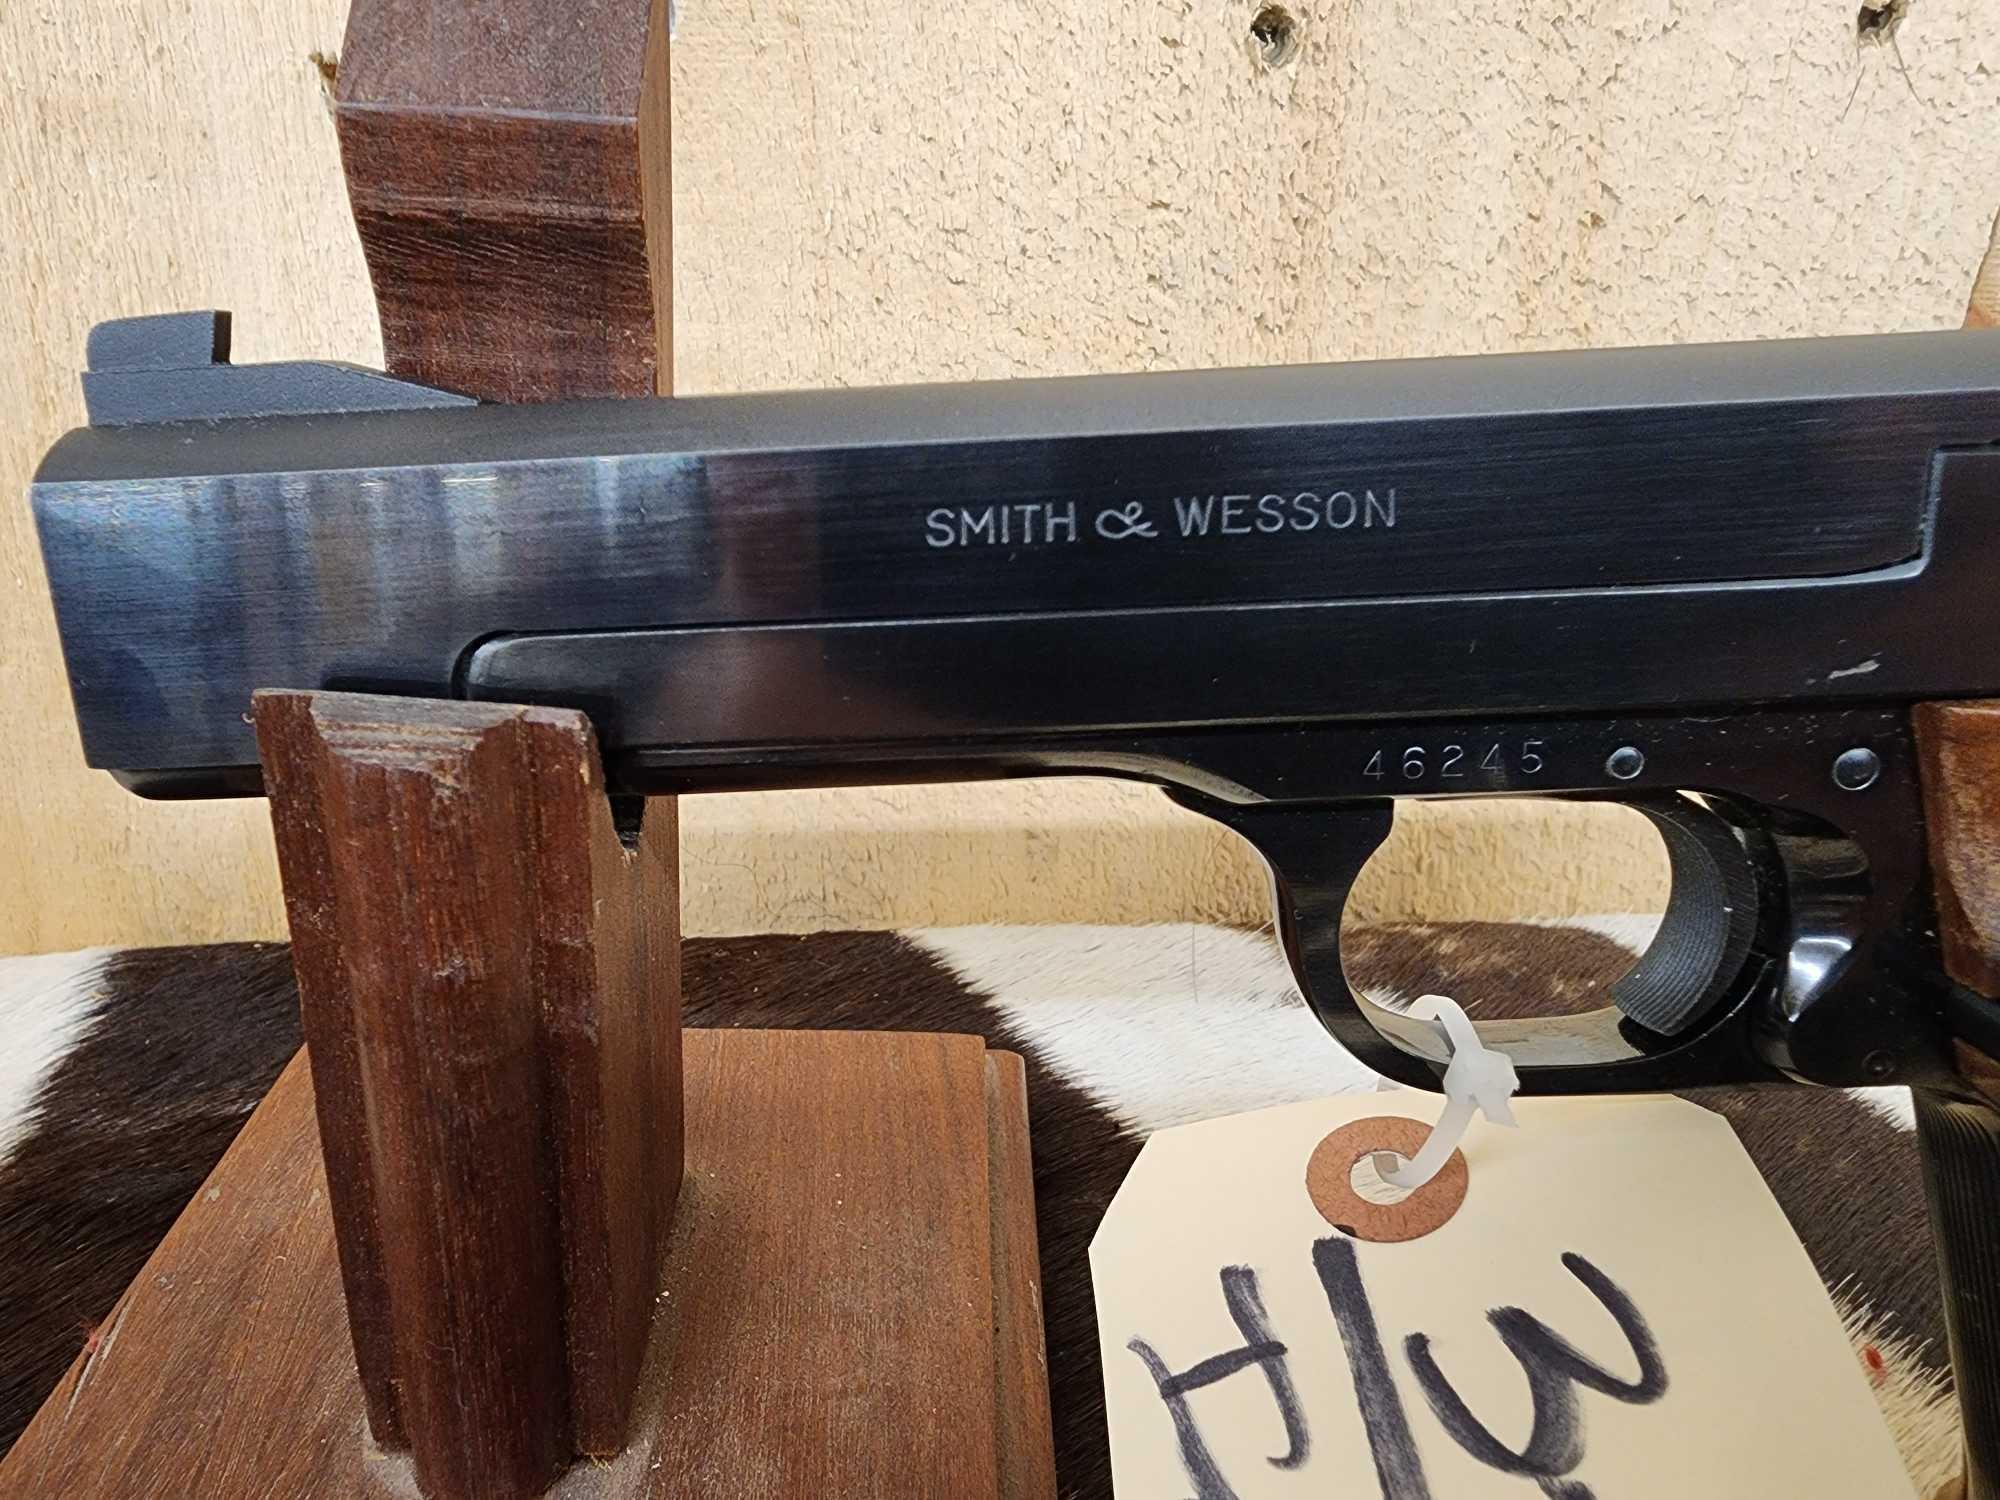 Smith & Wesson Model 41 .22 Semi Auto Pistol